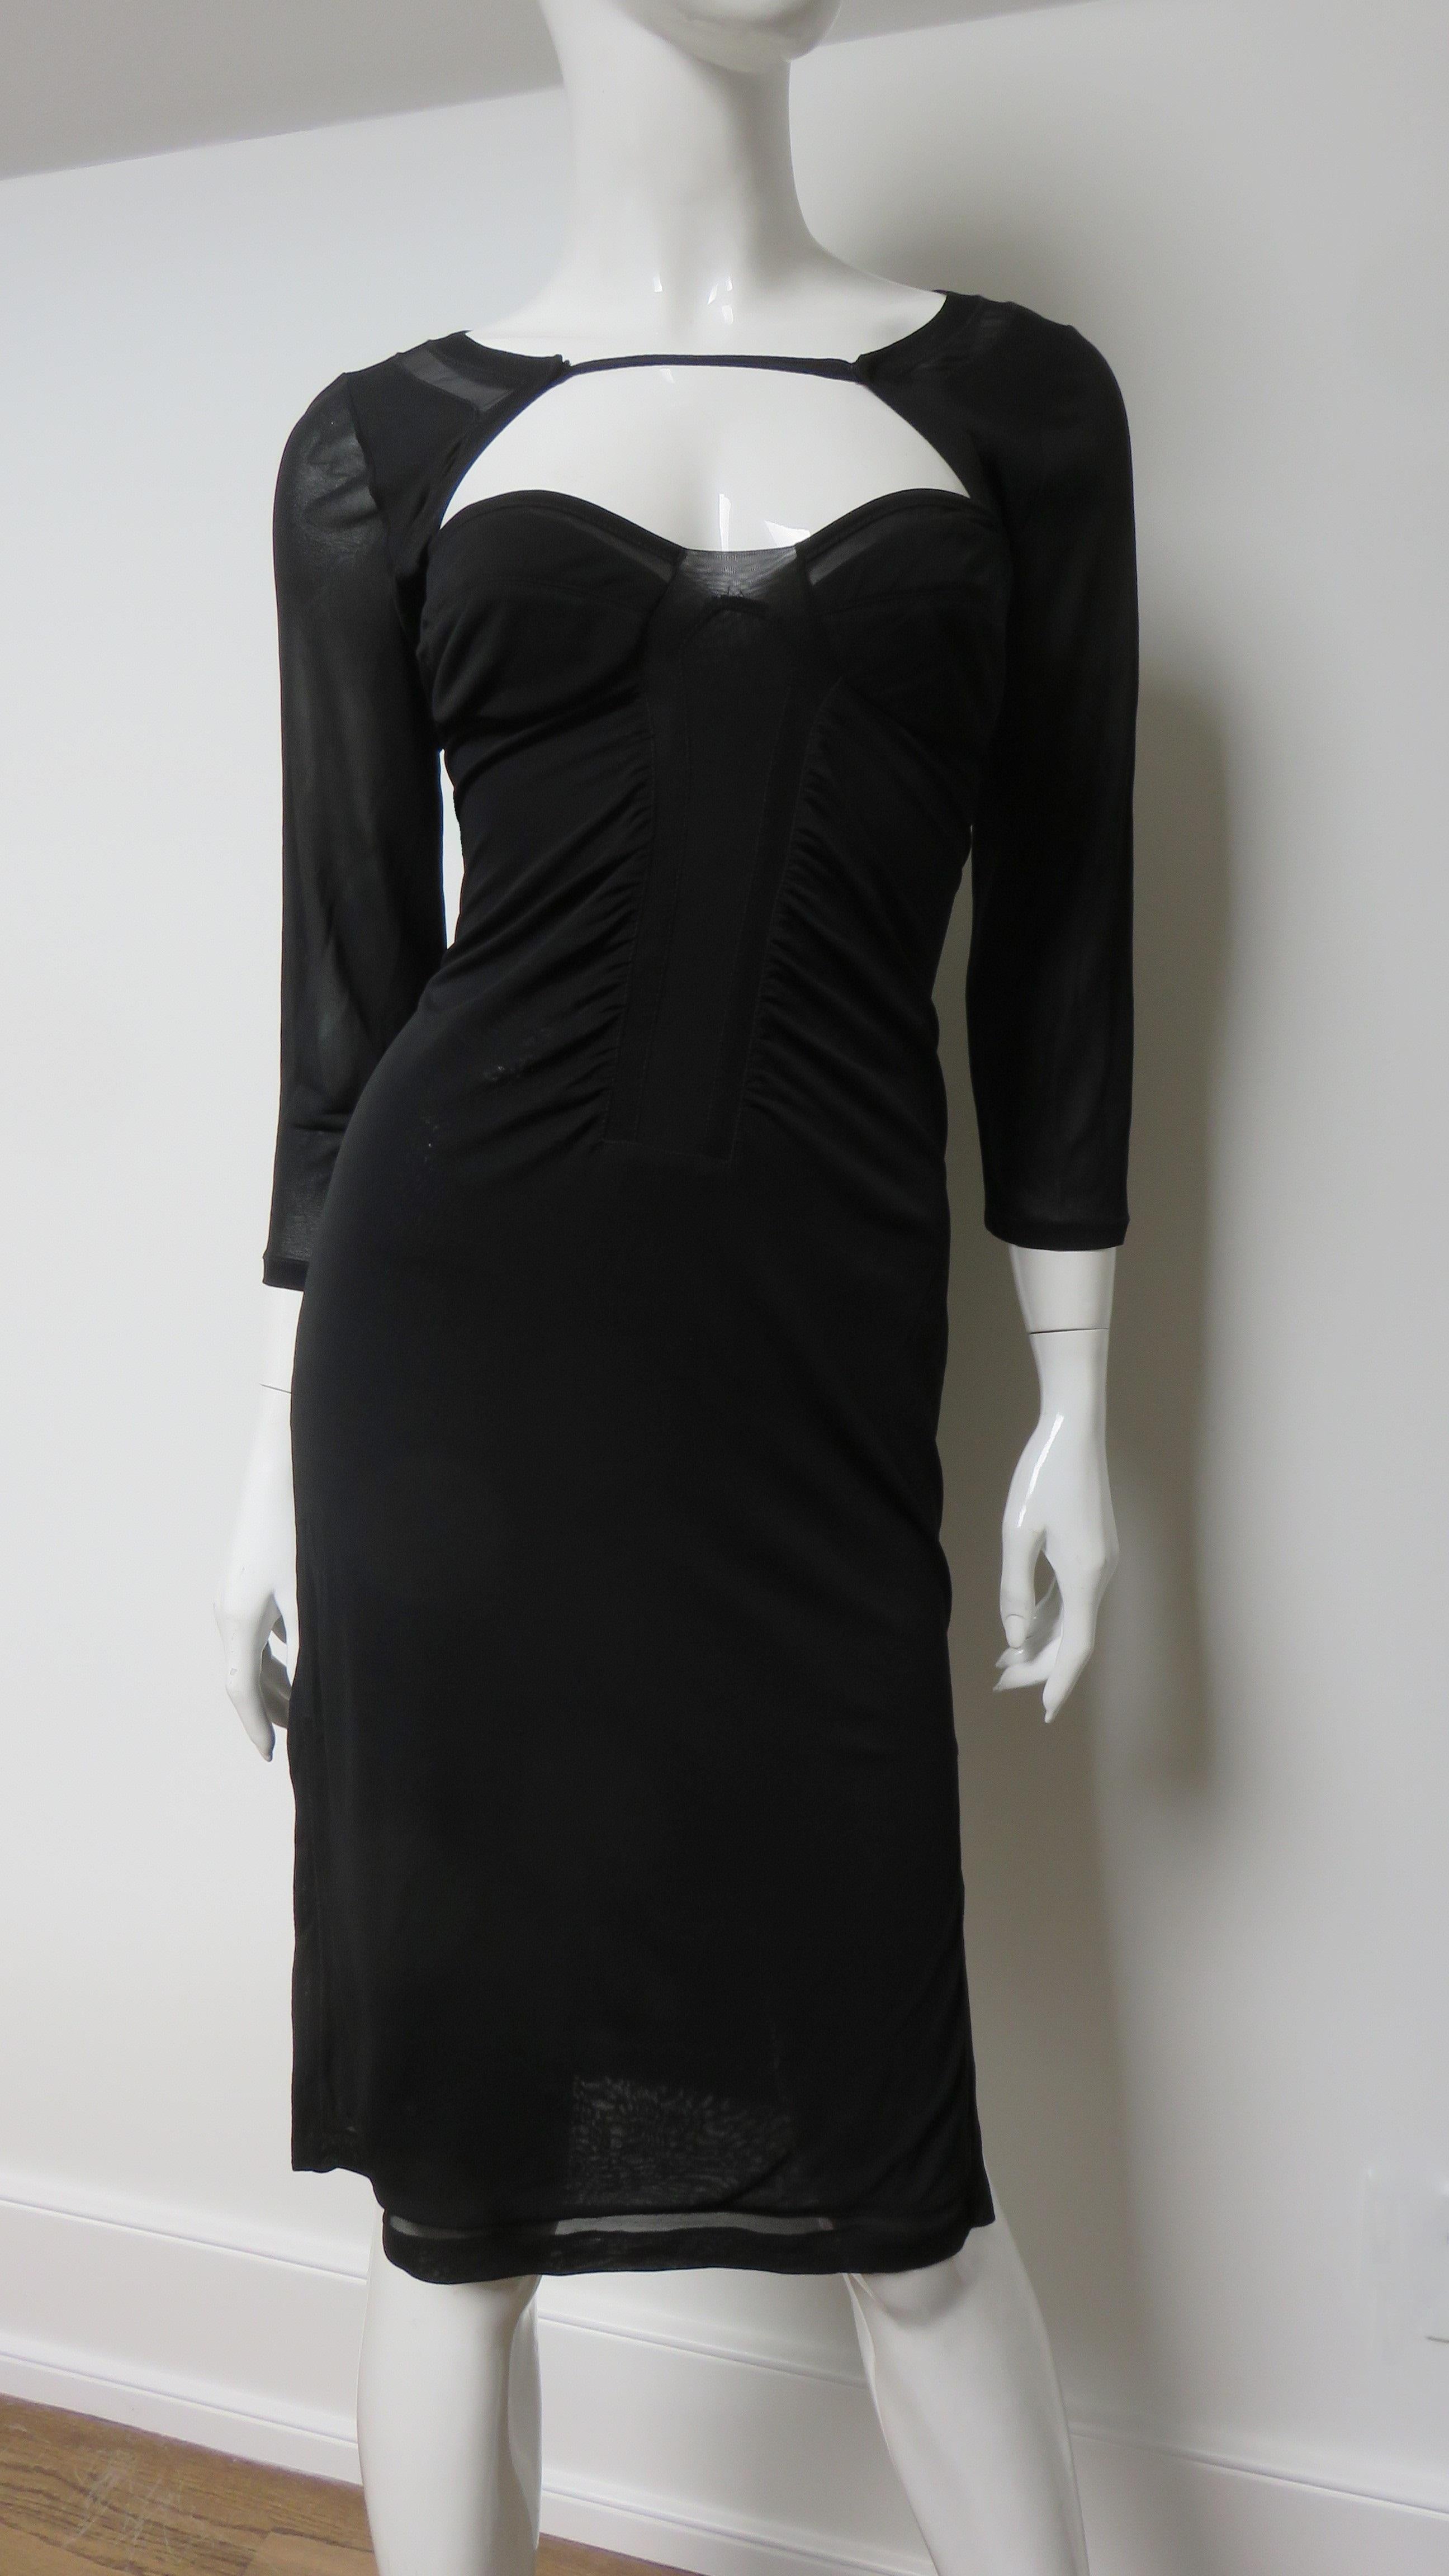 Fabuleuse robe noire en soie fine extensible, signée Tom Ford pour Gucci. Il présente des manches 3/4, des fentes à l'ourlet latéral et une fine bretelle traversant le haut de la poitrine et le dos. L'ourlet et le buste sont entourés d'un panneau